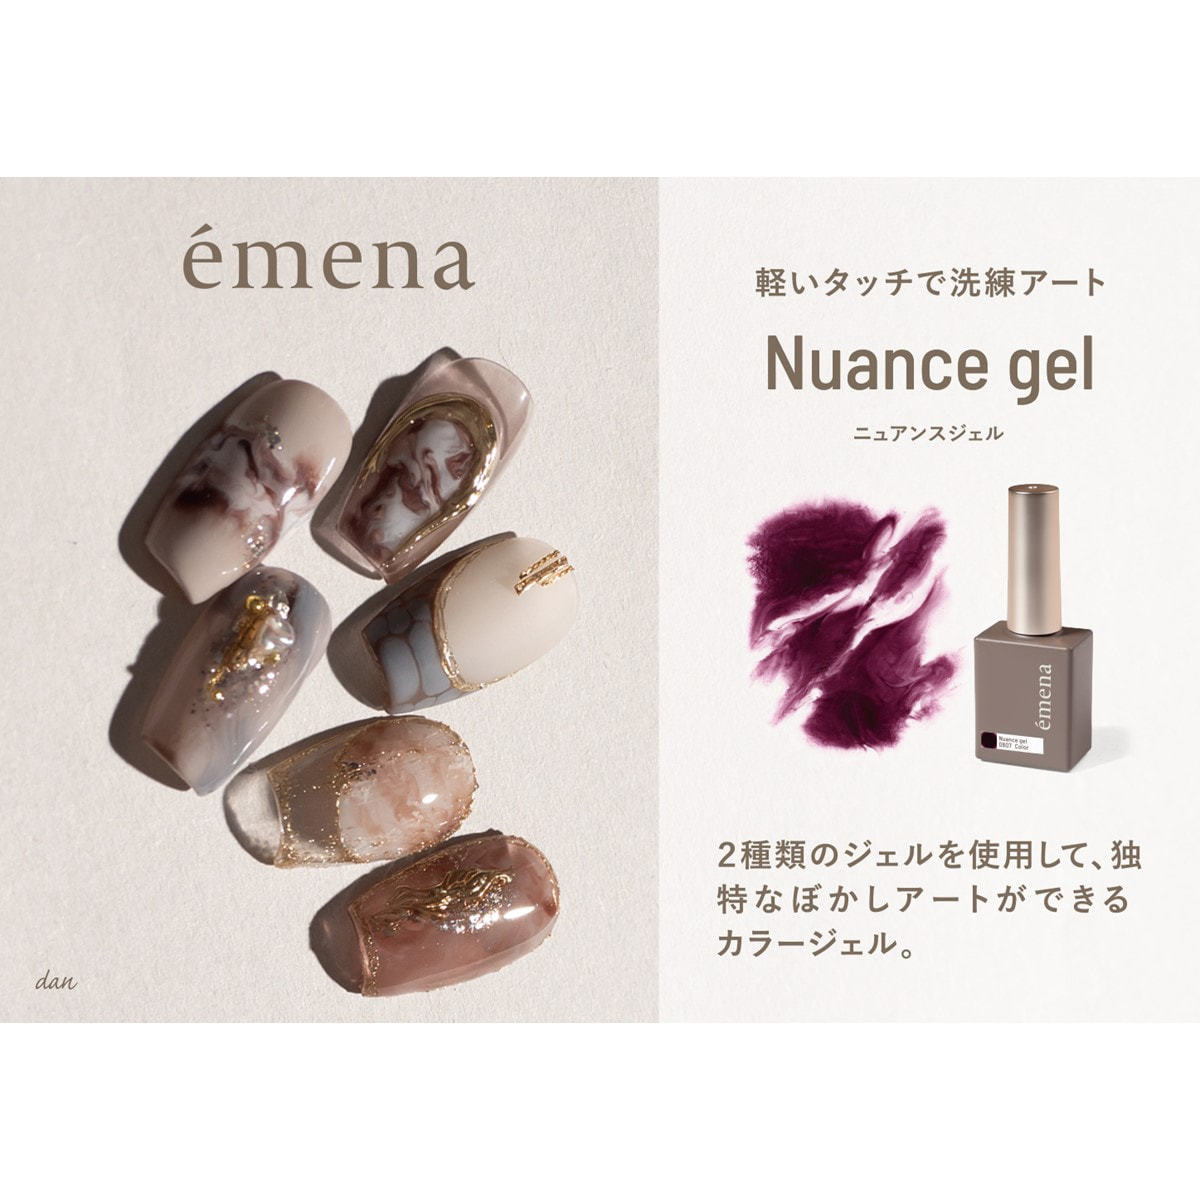 emena(エメナ) ウェービージェル 5色セット 8g× 5色入 (1個) - ジェル